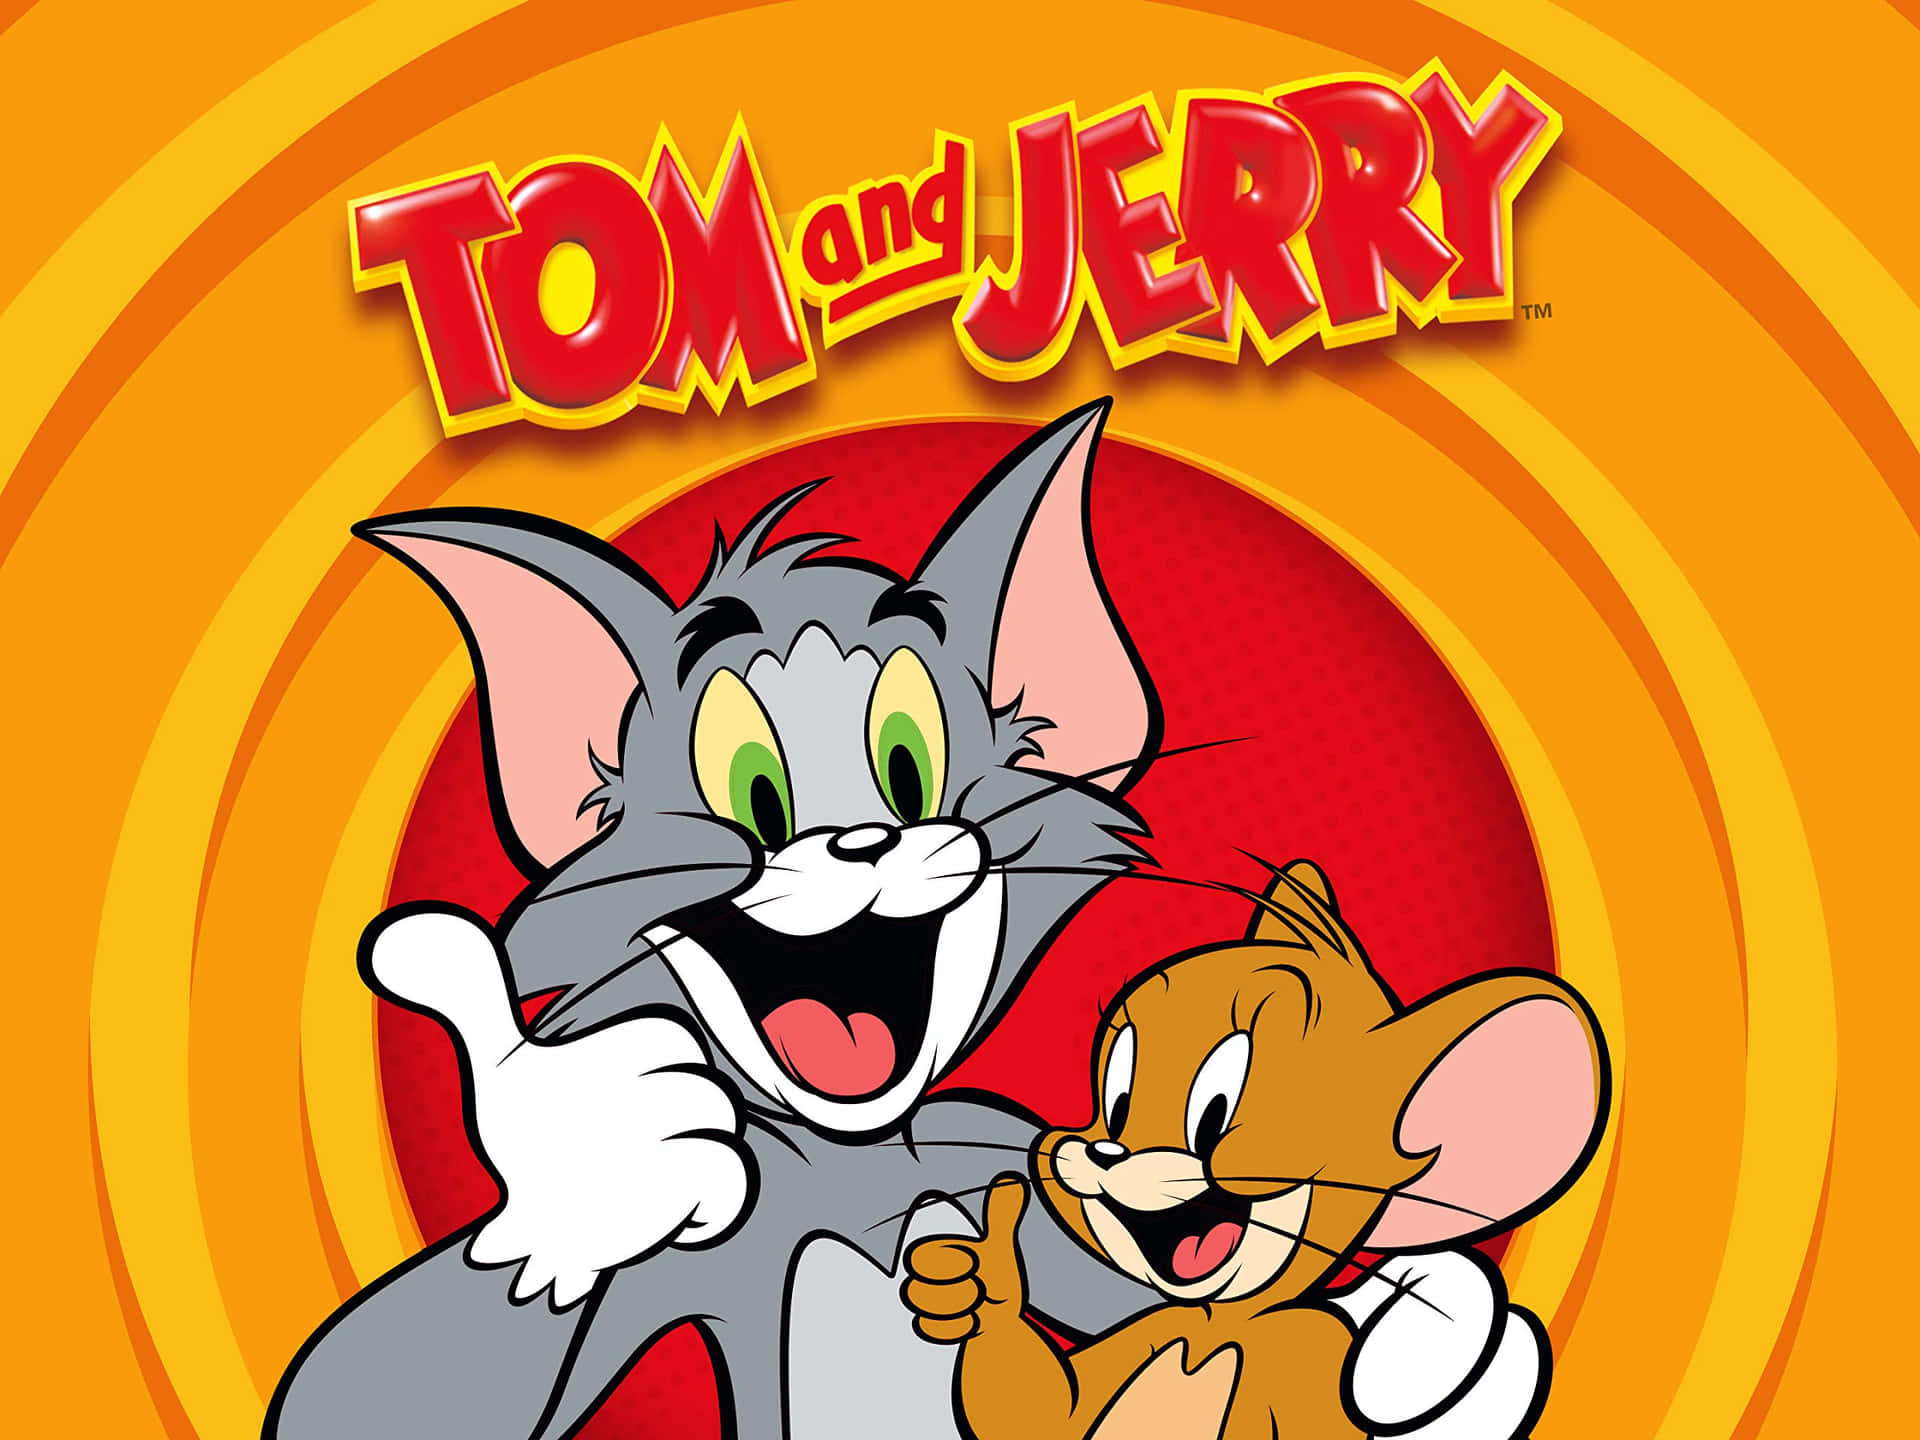 Tomund Jerry Haben Spaß.